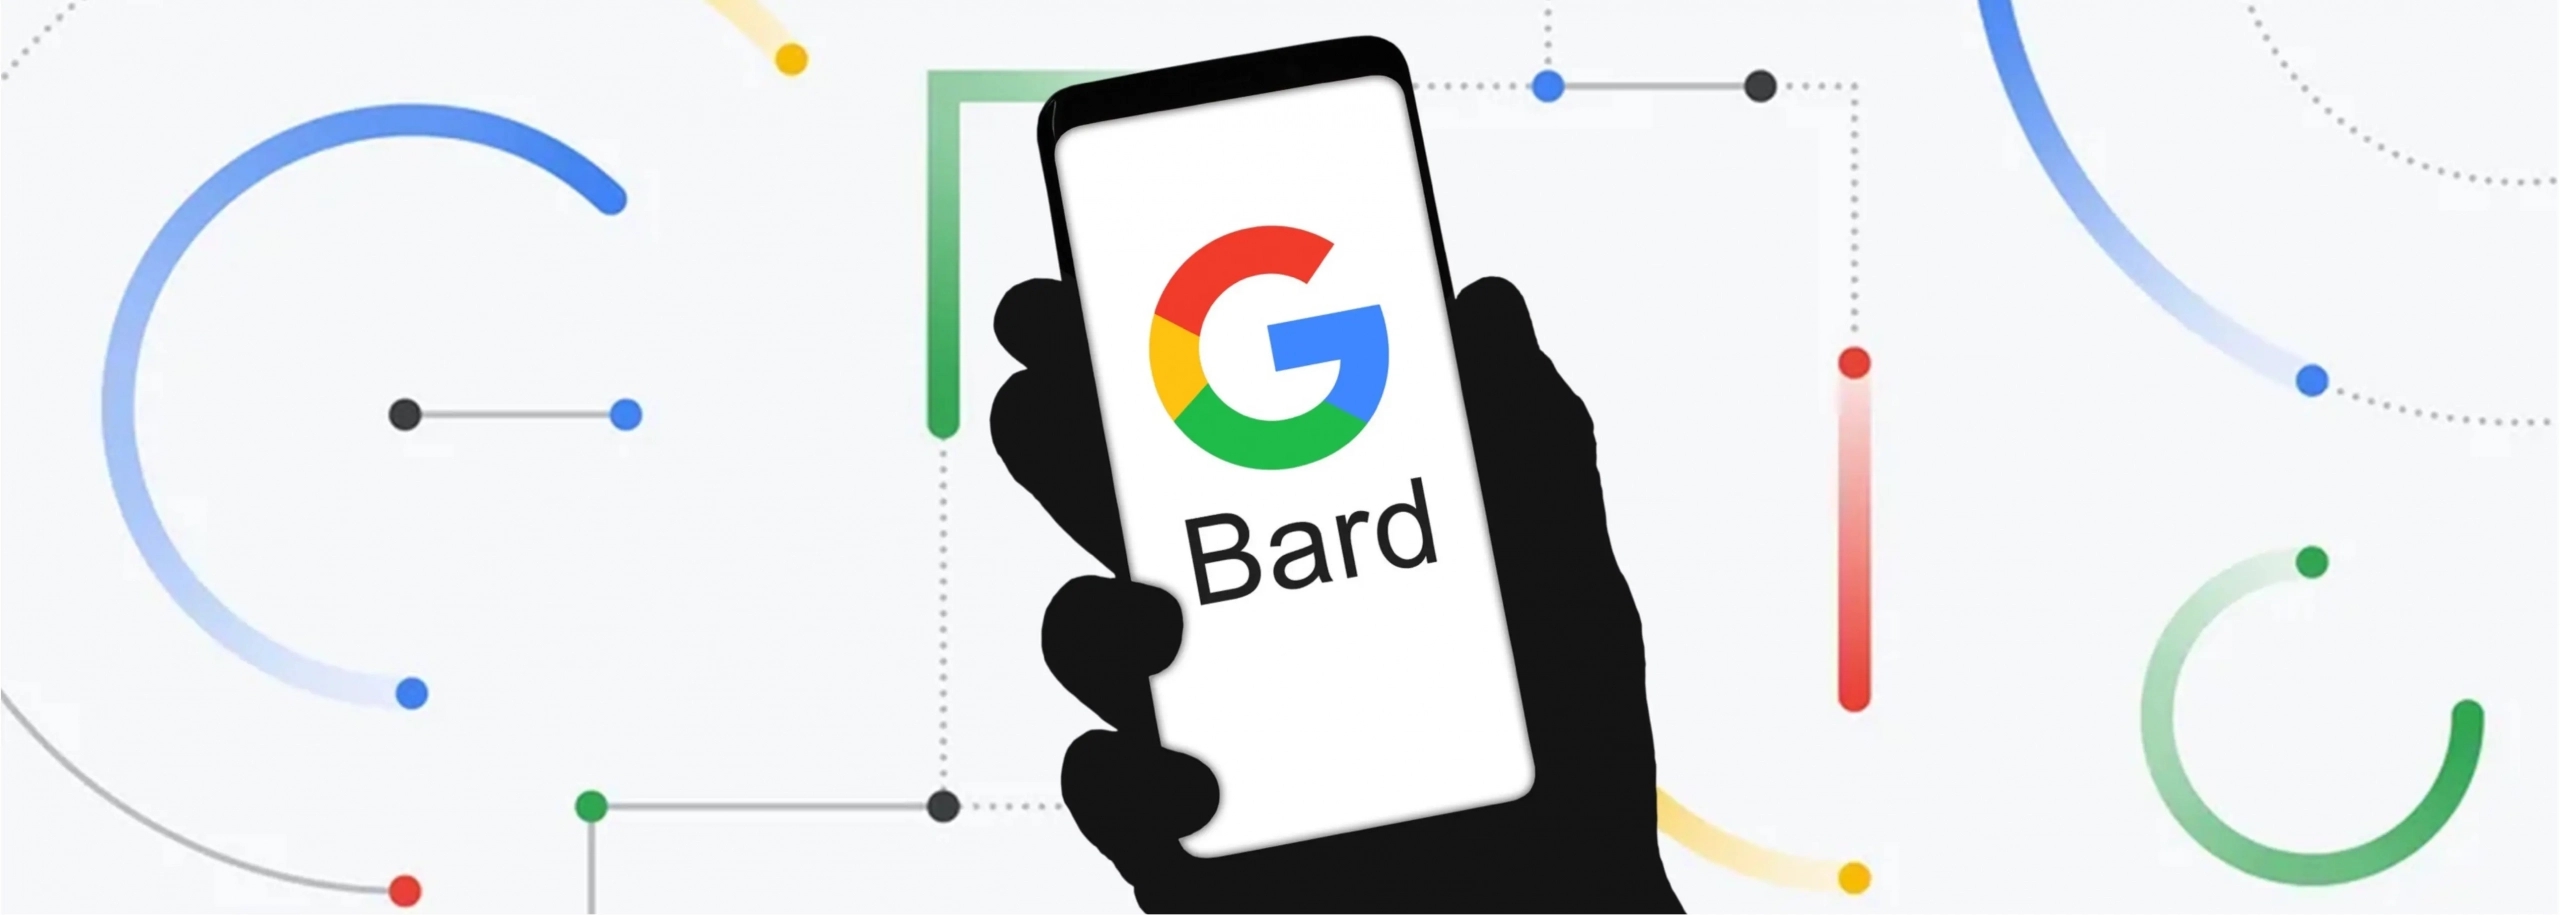 谷歌CEO发内部信 全员帮助测试Bard AI聊天机器人